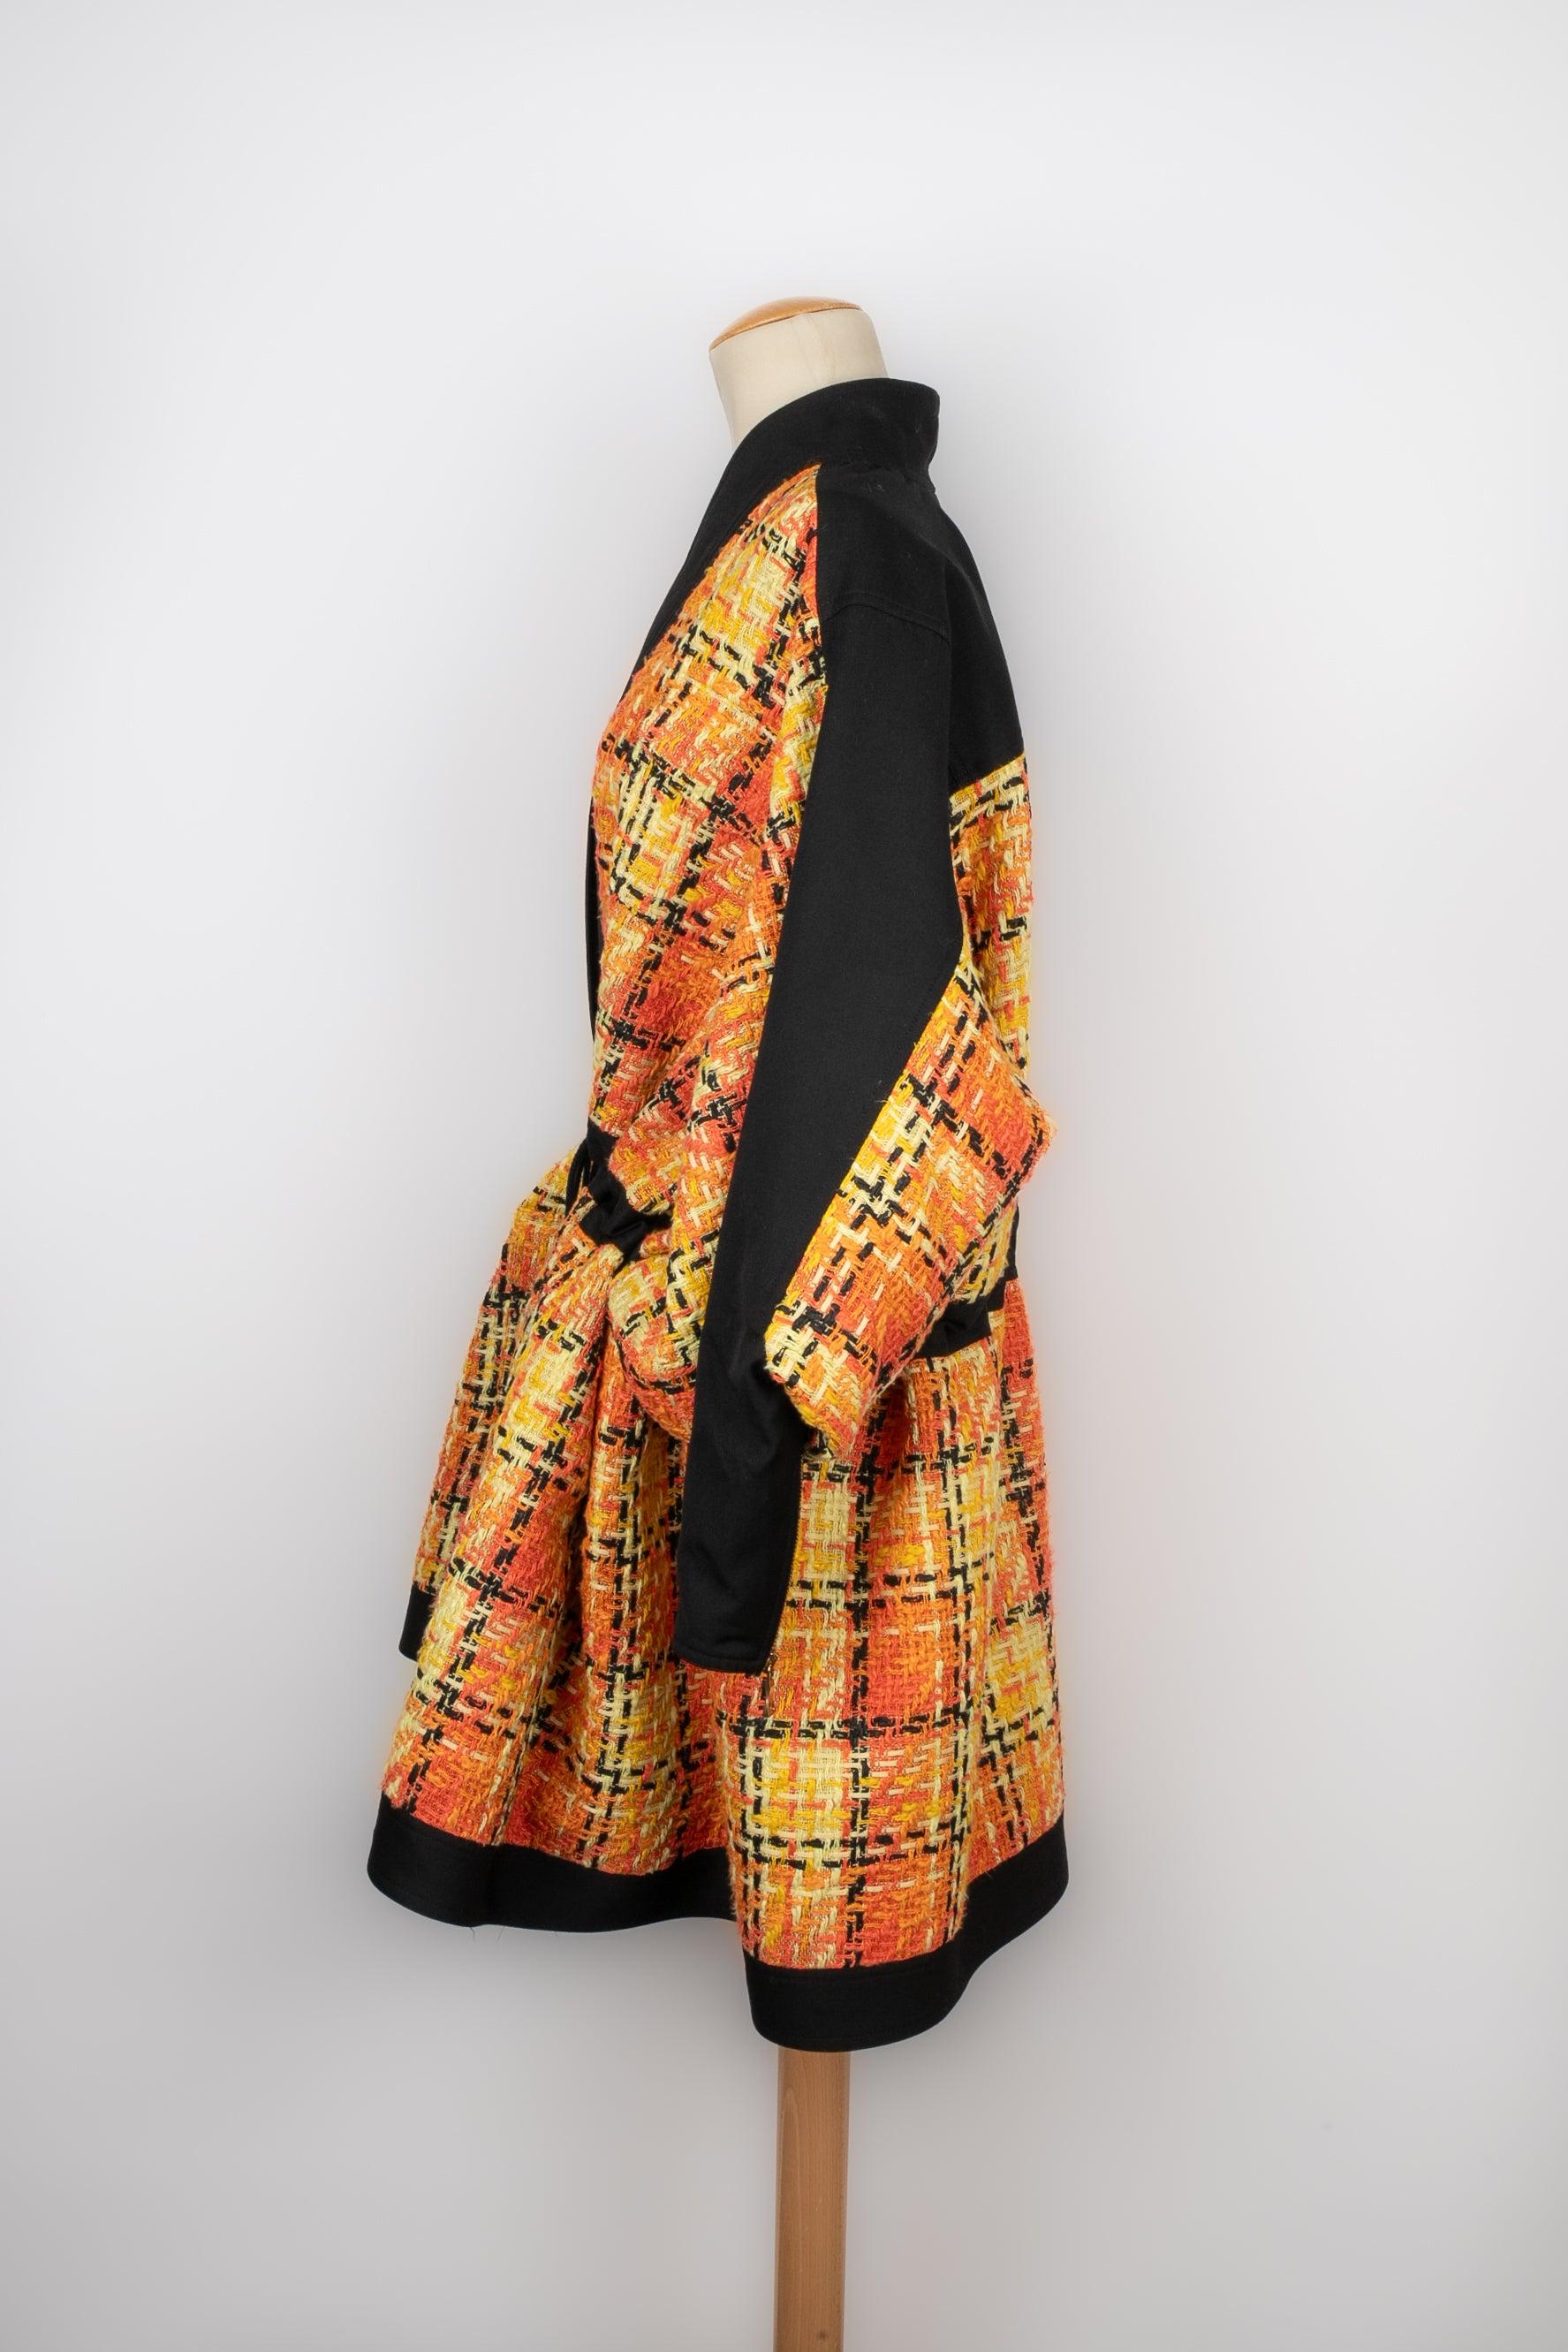 Women's Balmain Tweed Coat in Orange and Yellow Tones For Sale